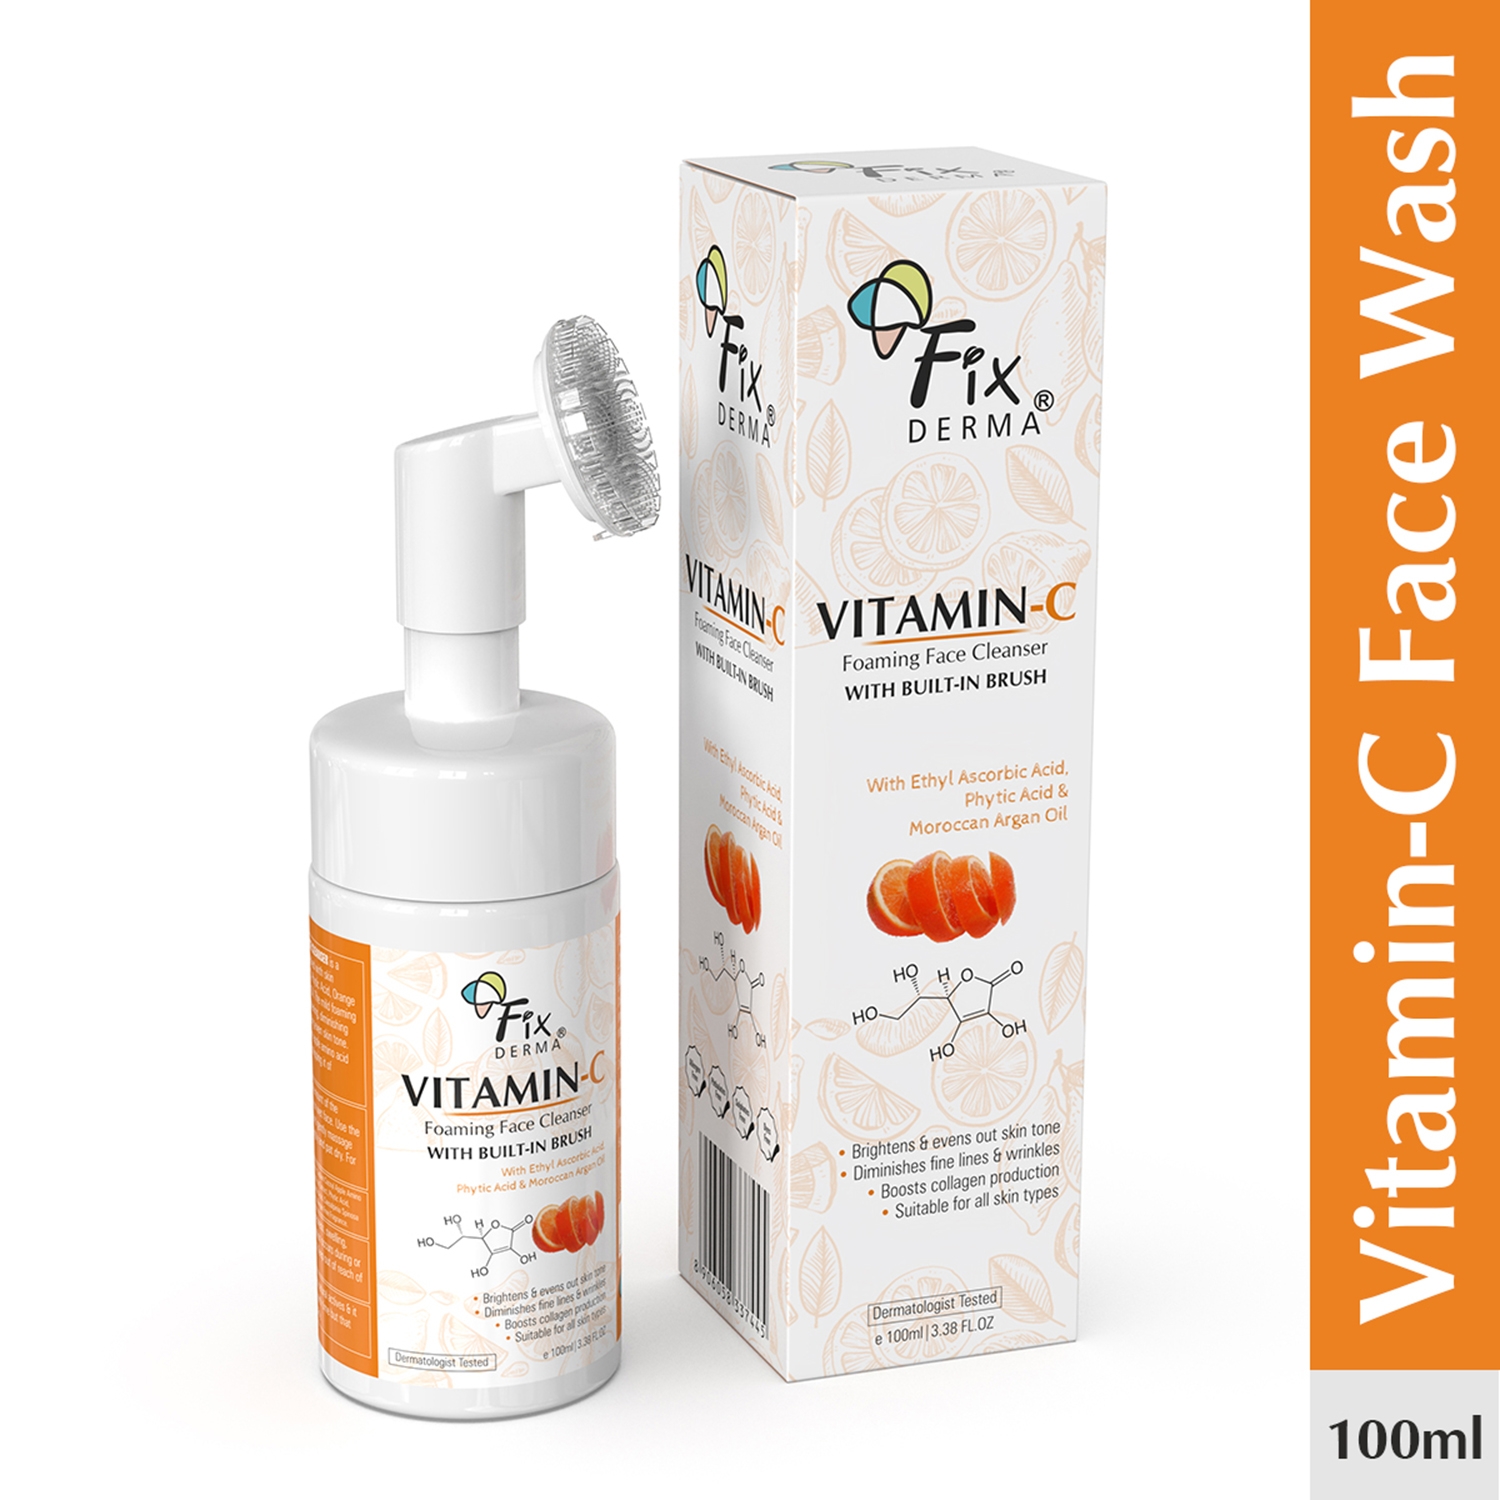 Fixderma | Fixderma Vitamin-C Foaming Face Cleanser (100ml)